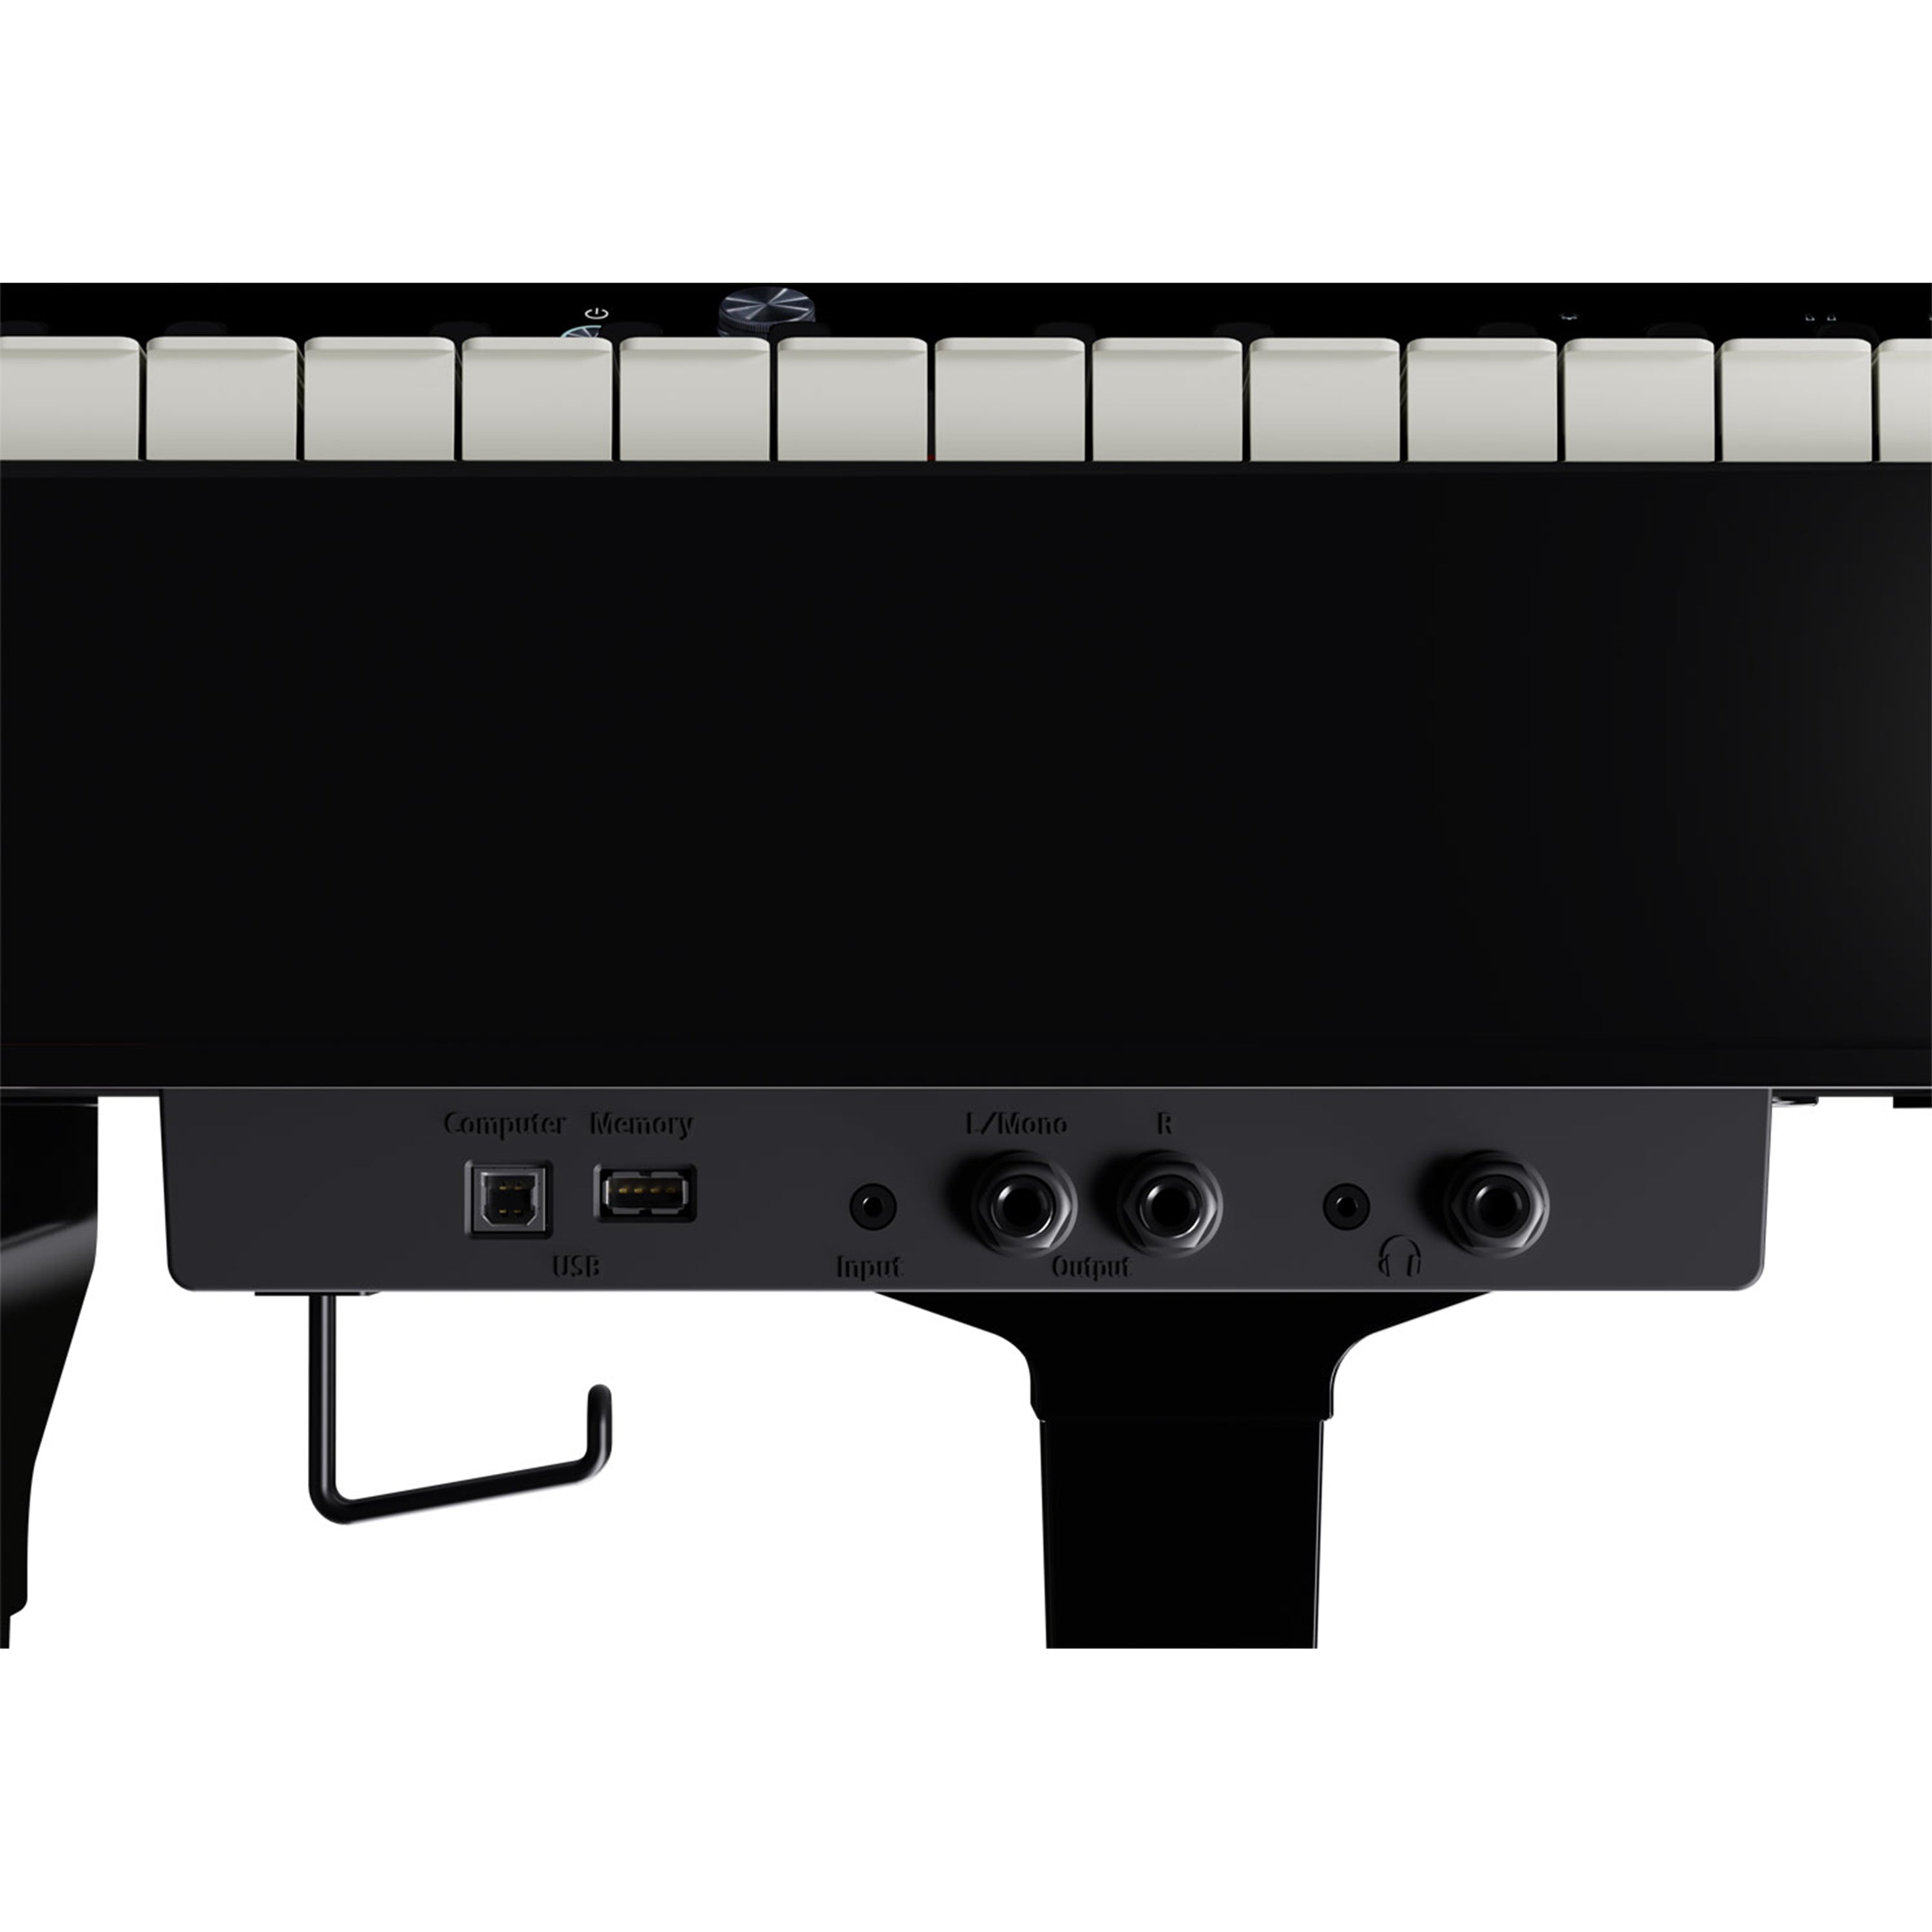 Roland GP-9M Digital Grand Piano with Moving Keys - Polished Ebony - input and output jacks